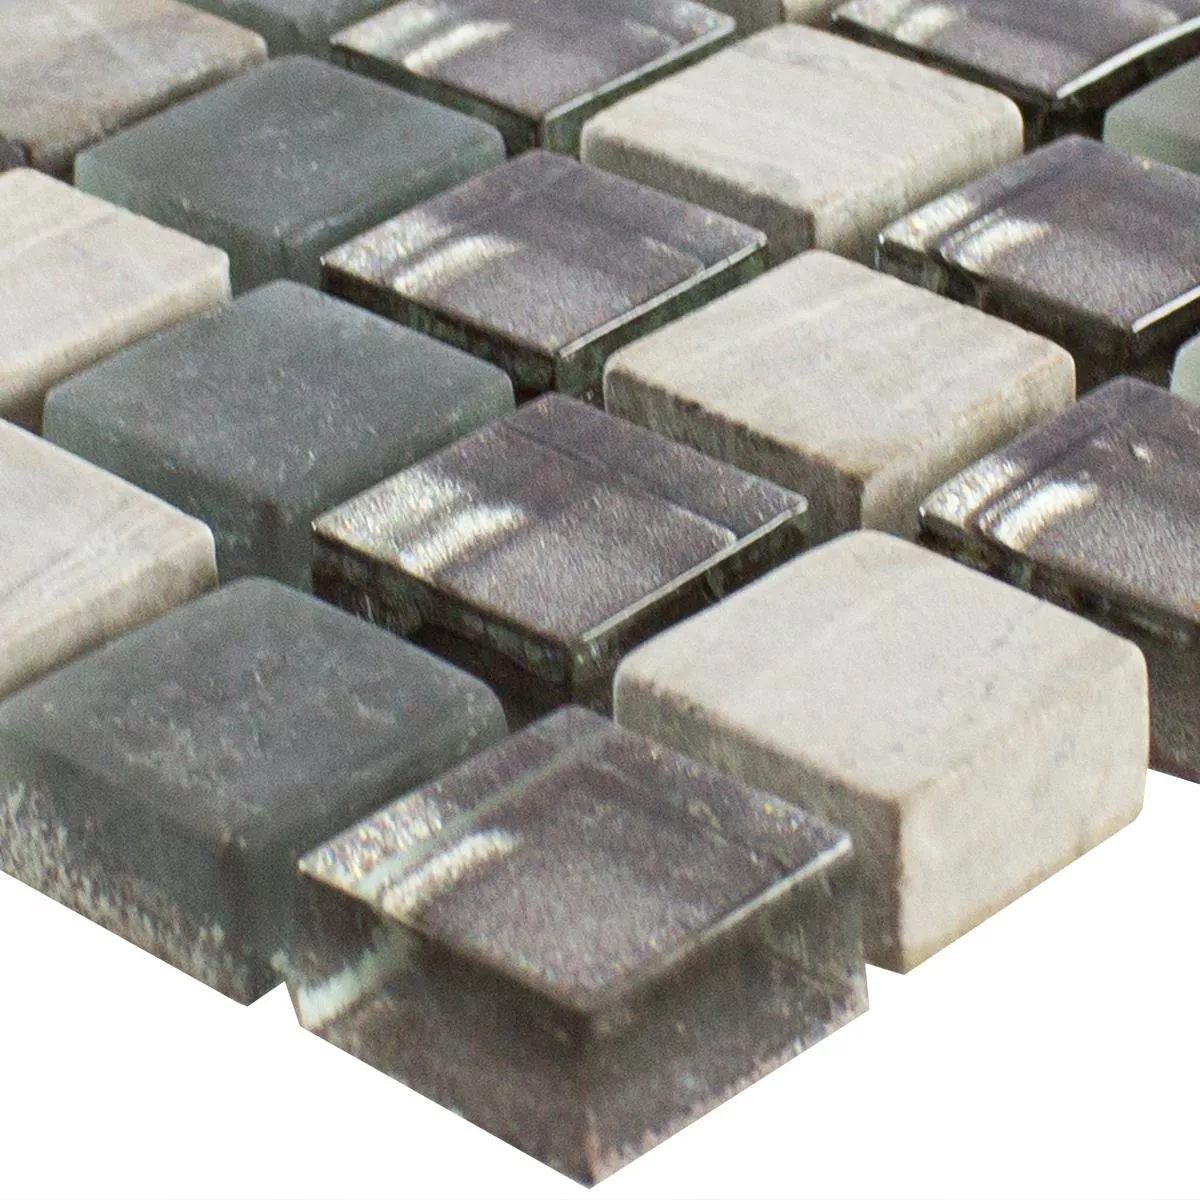 Muster von Glas Naturstein Mosaik Fliesen Hayrabey Grau